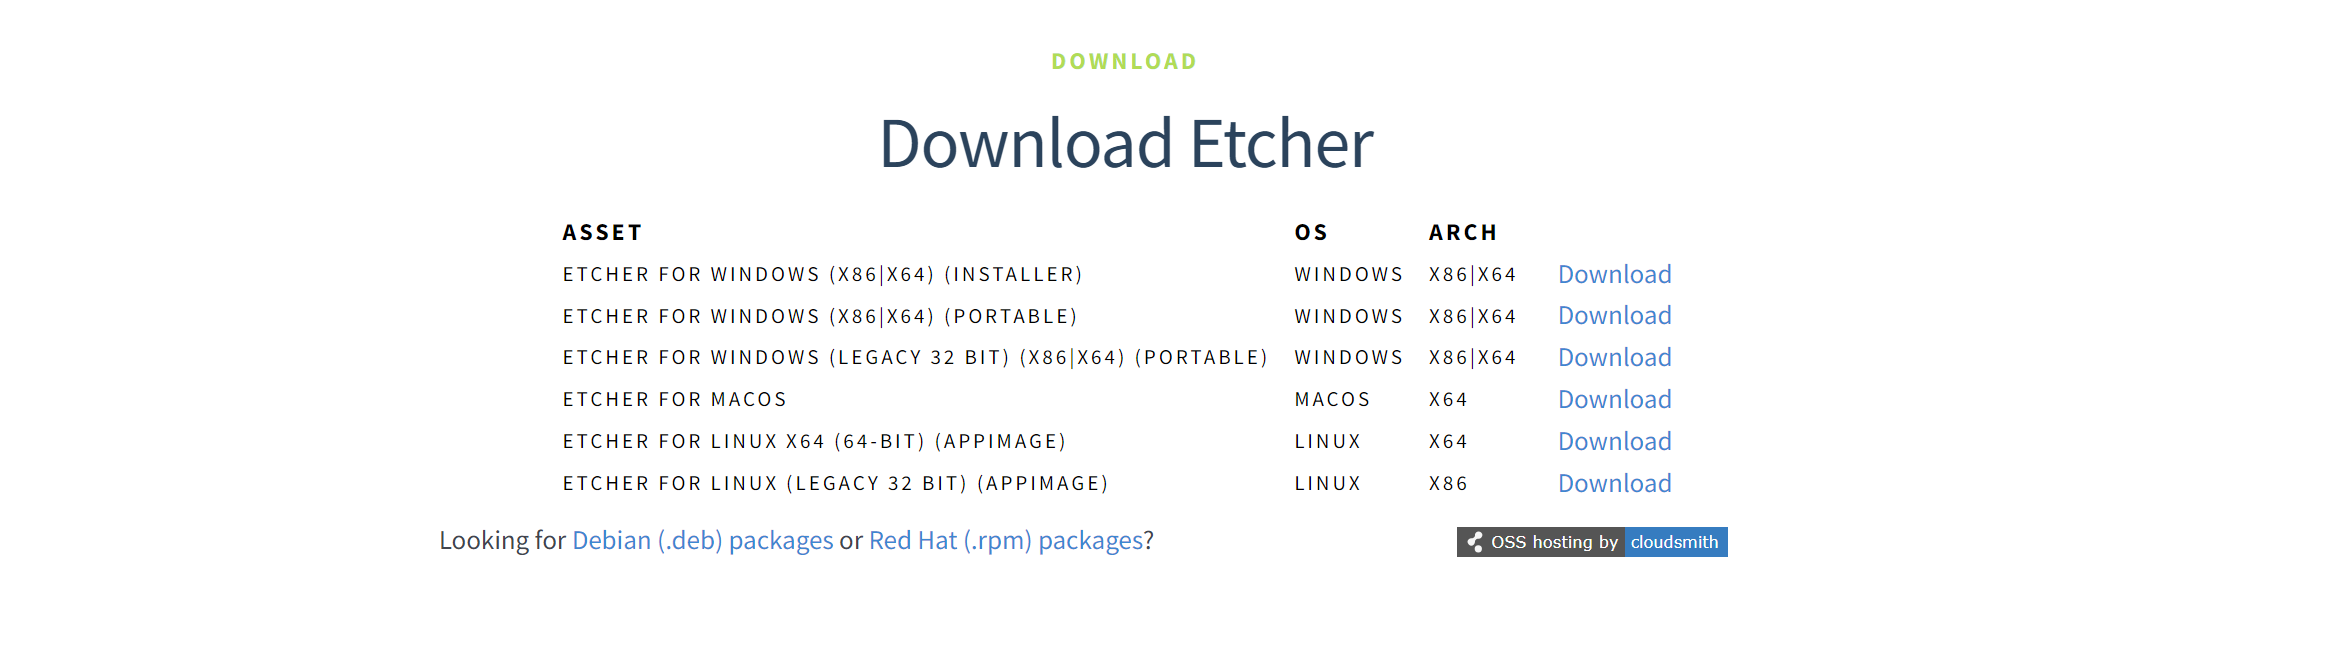 Download Etcher